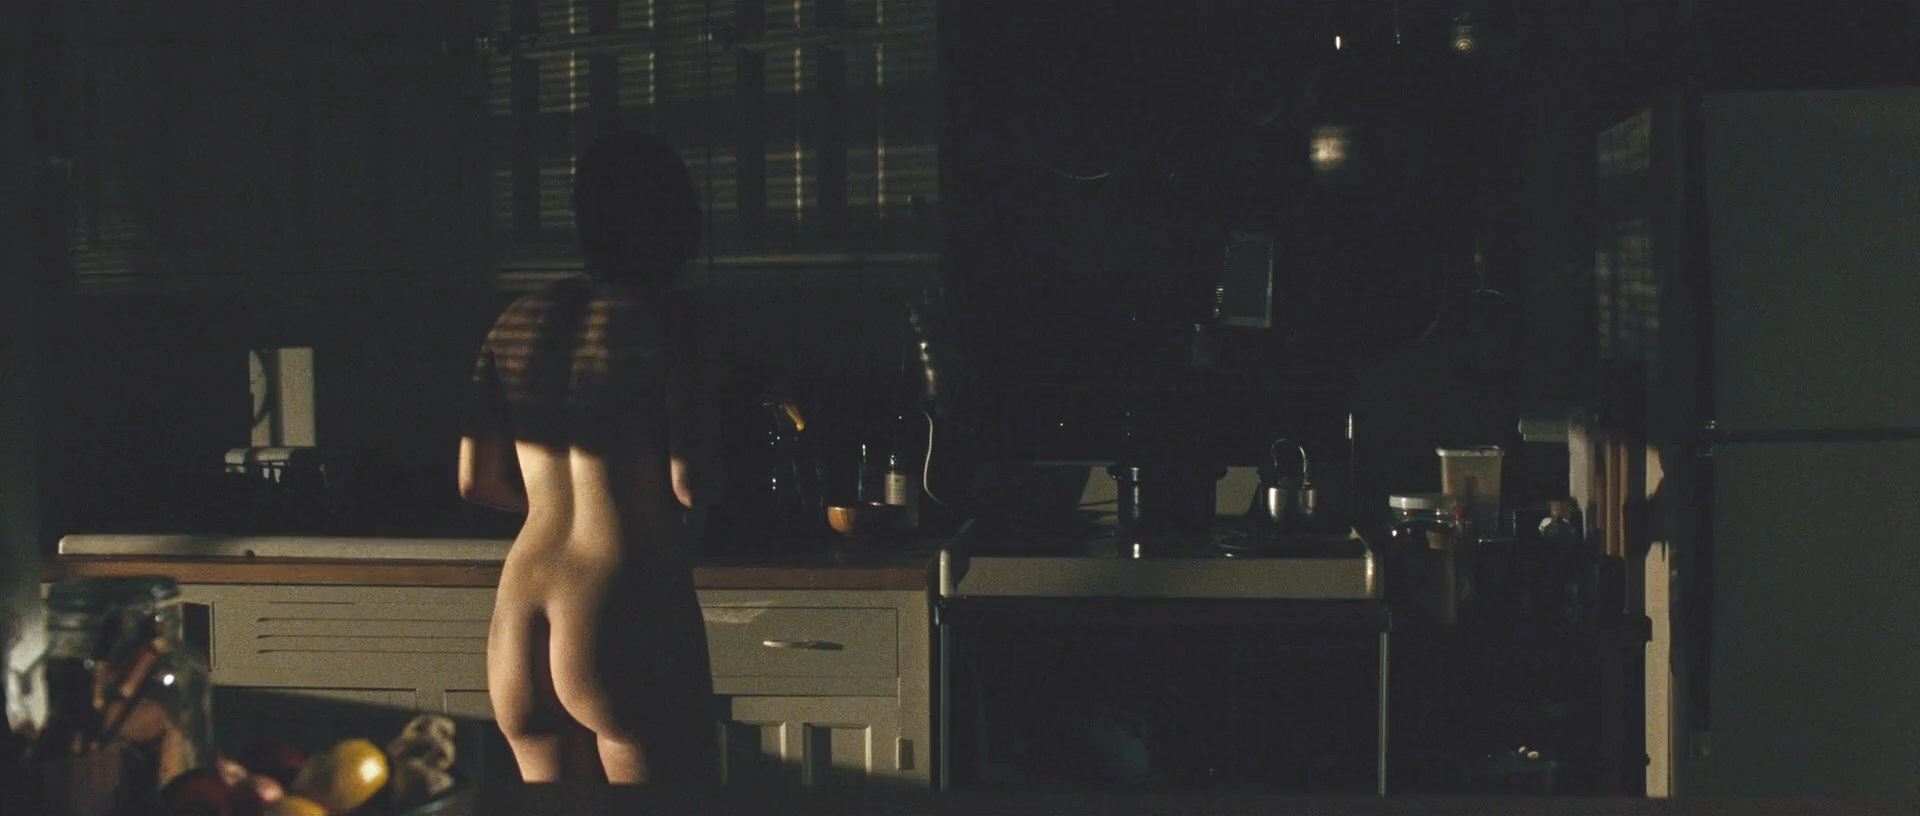 Emily hampshire nude pics - 🧡 Emily Hampshire Nude The Fappening - Fa...